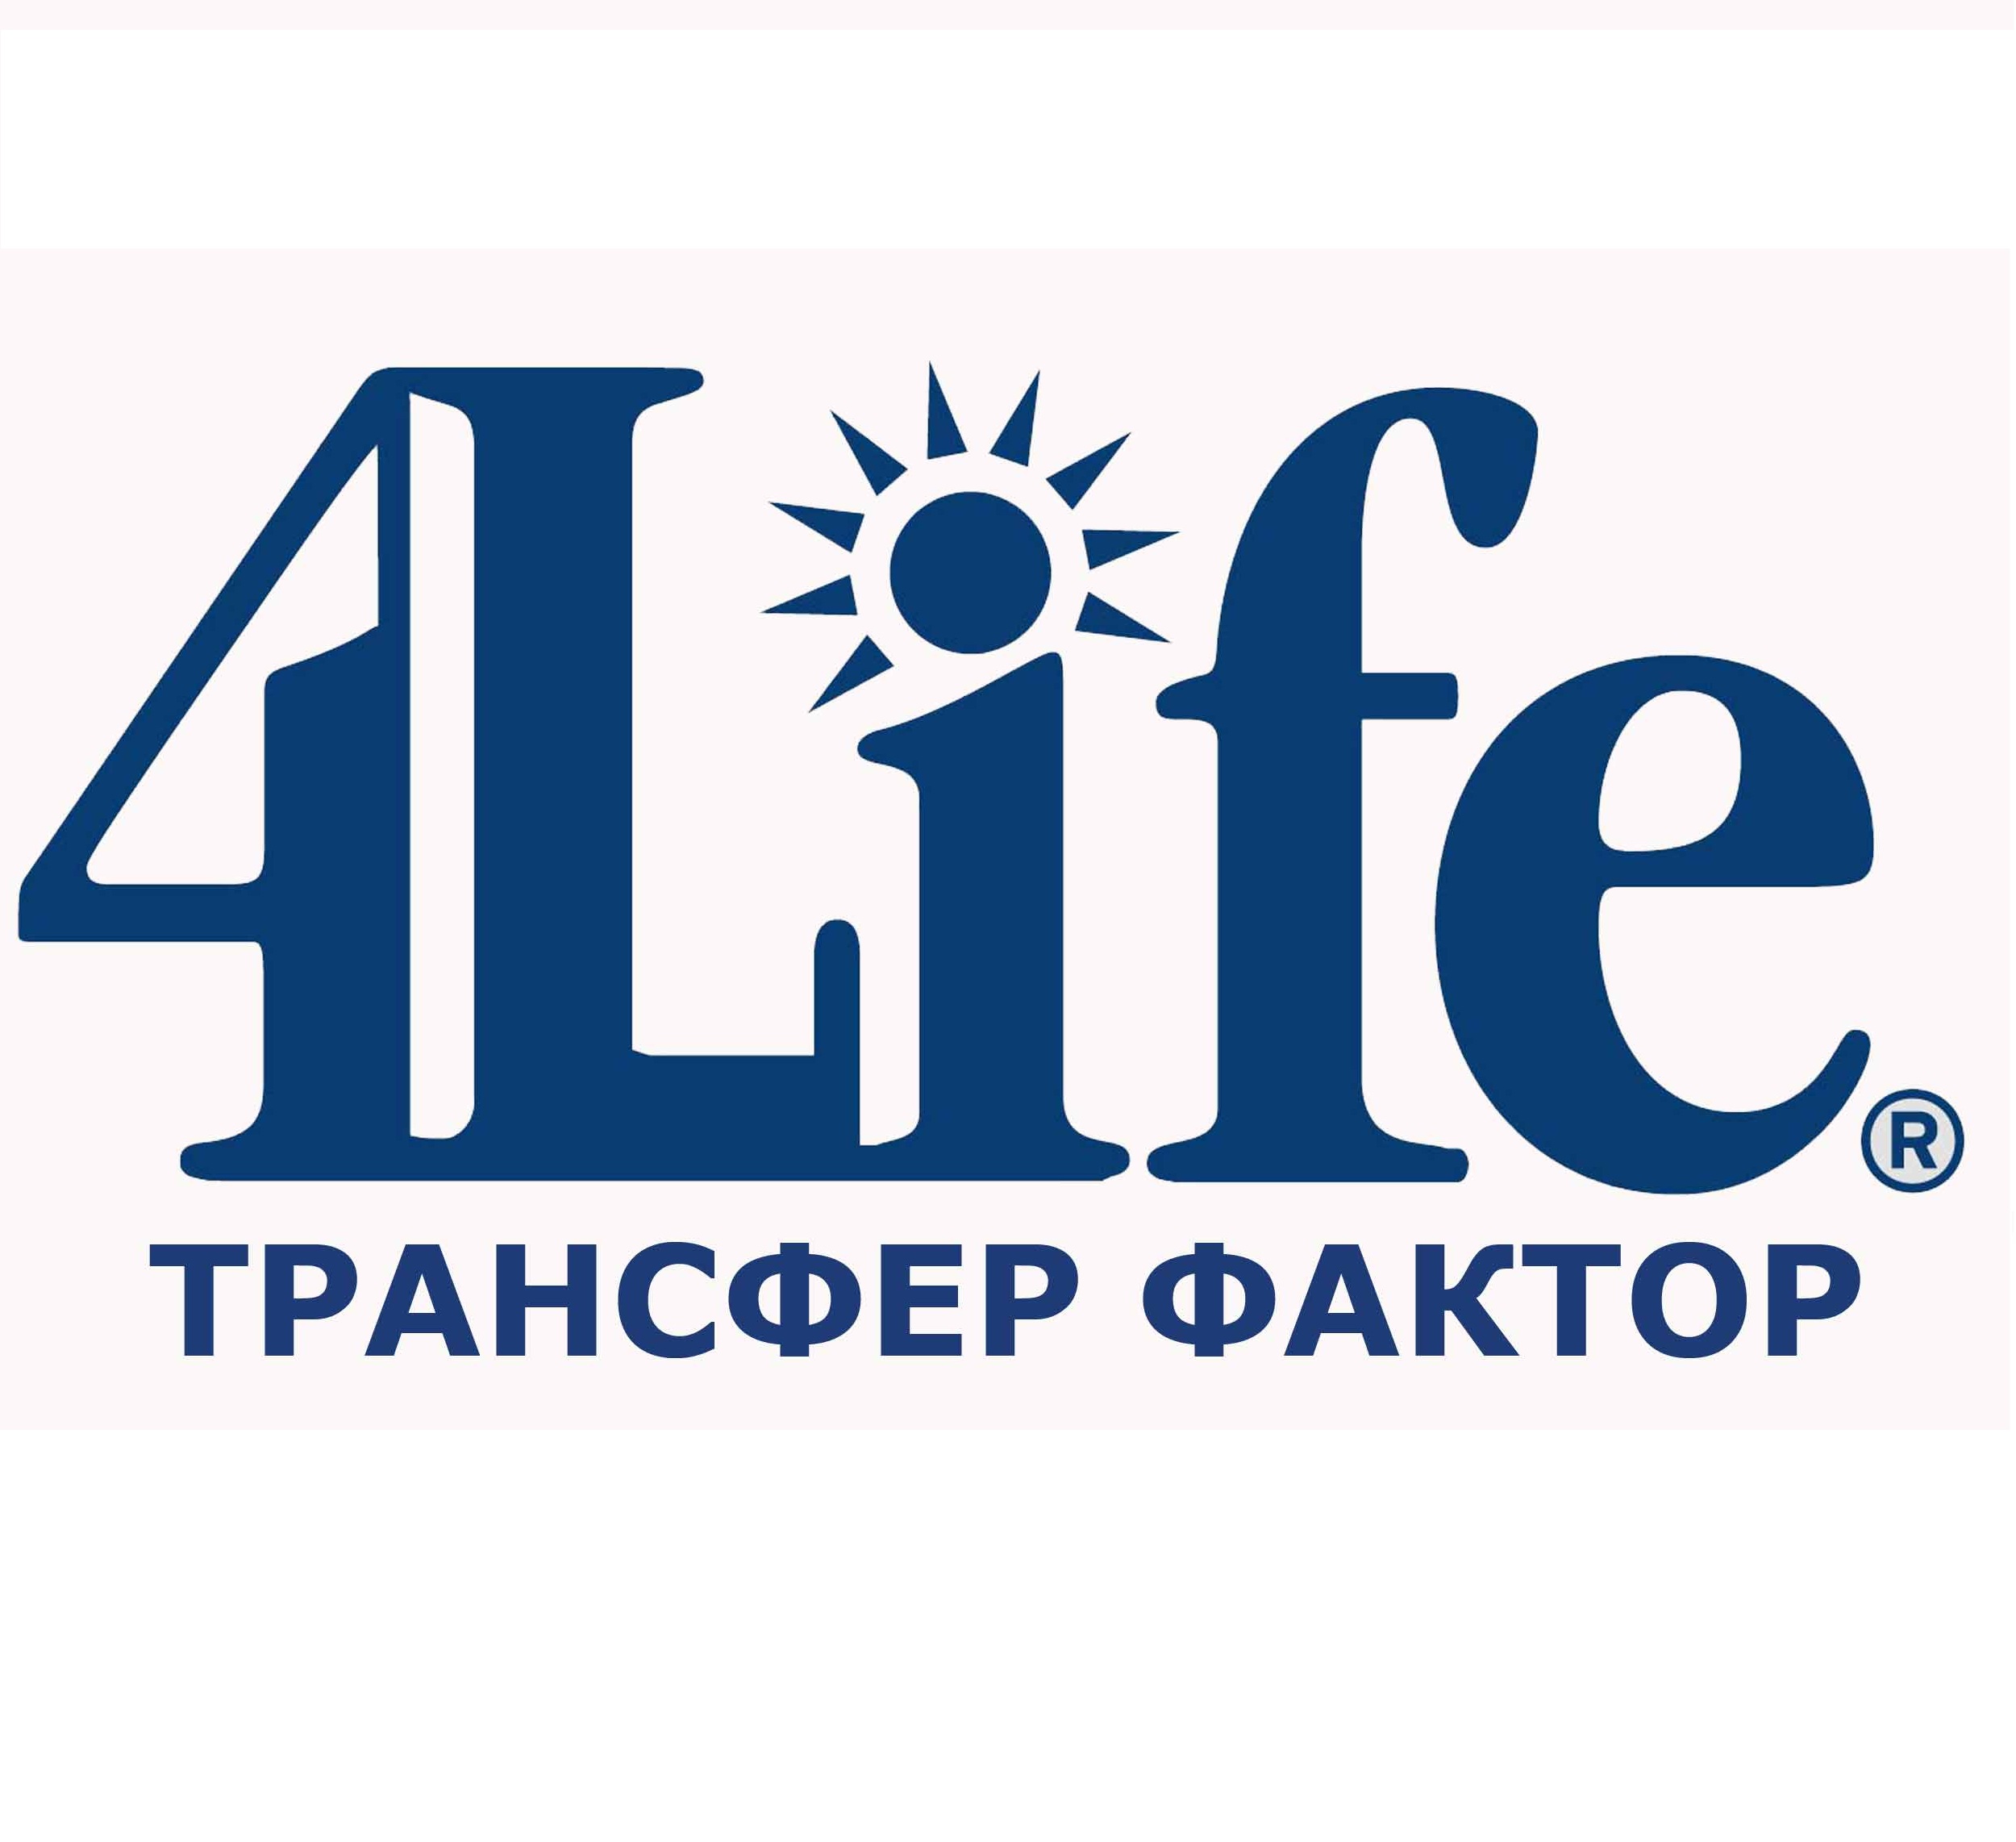 4 g life. Трансфер факторы 4life research. Трансфер фактор 4 Life logo. Компания 4life research. 4life новый логотип.